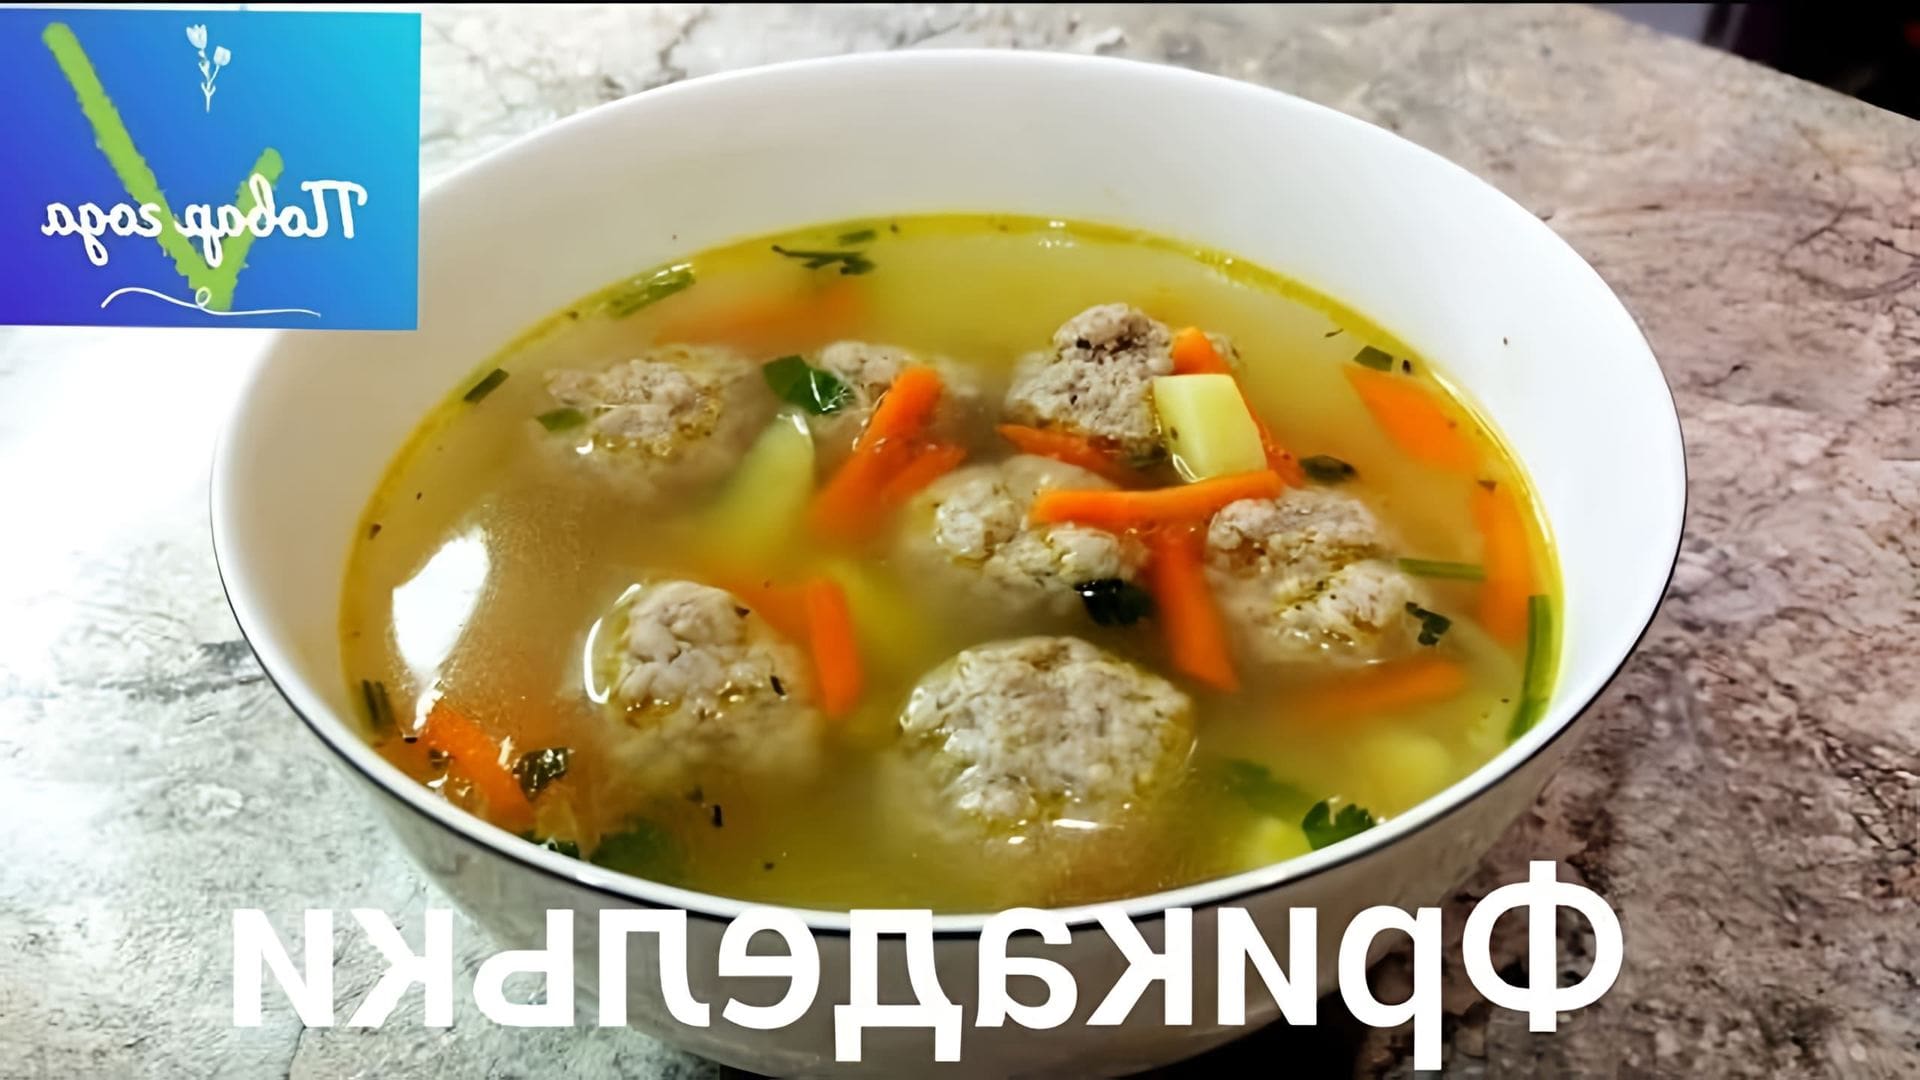 В этом видео повар показывает, как приготовить мясной суп с фрикадельками